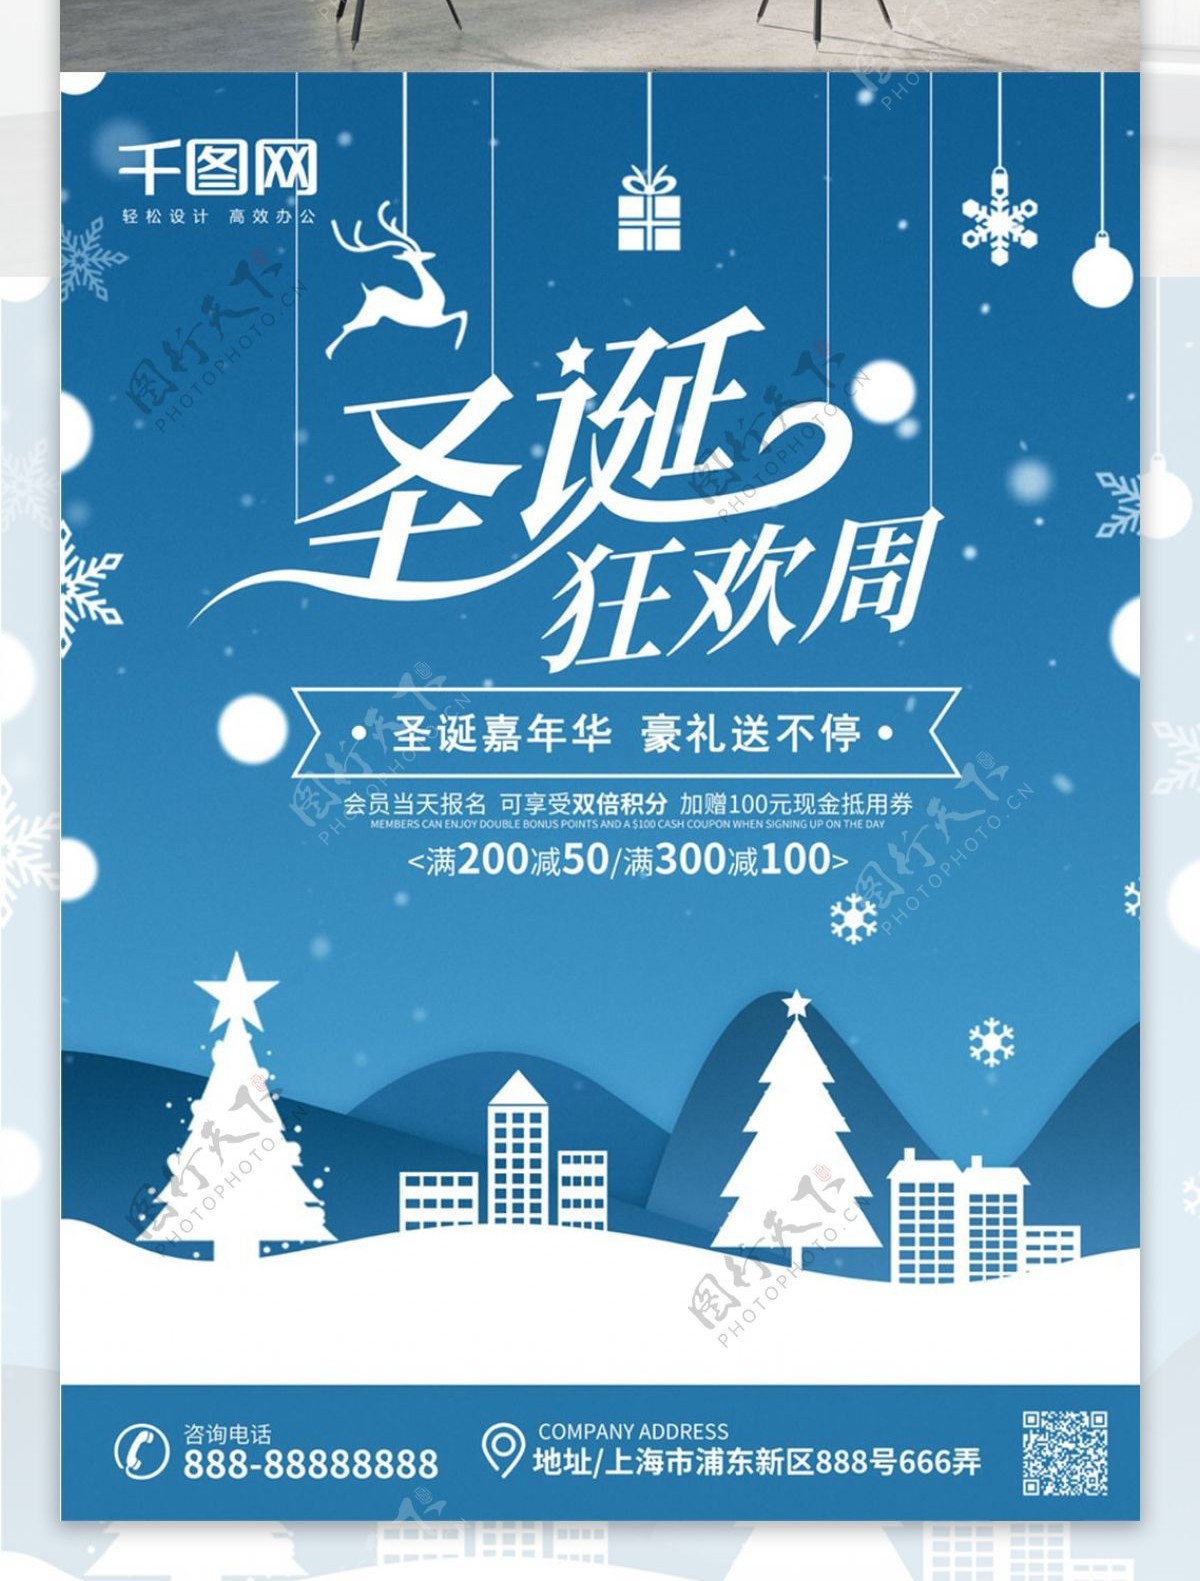 蓝色剪纸风圣诞节节日海报